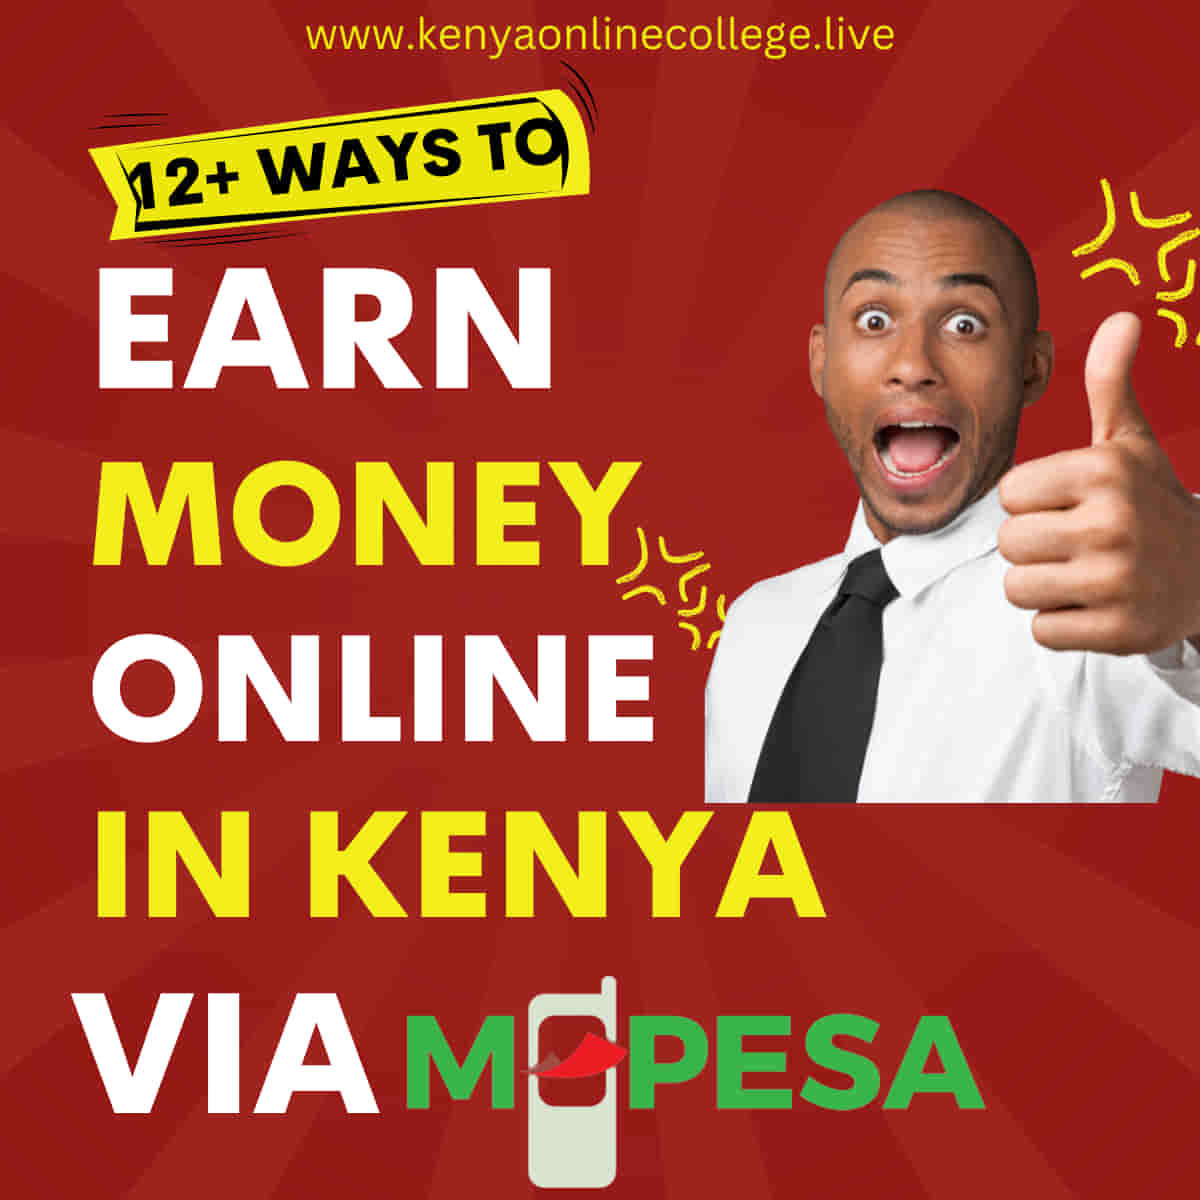 How to earn money online in Kenya via mpesa